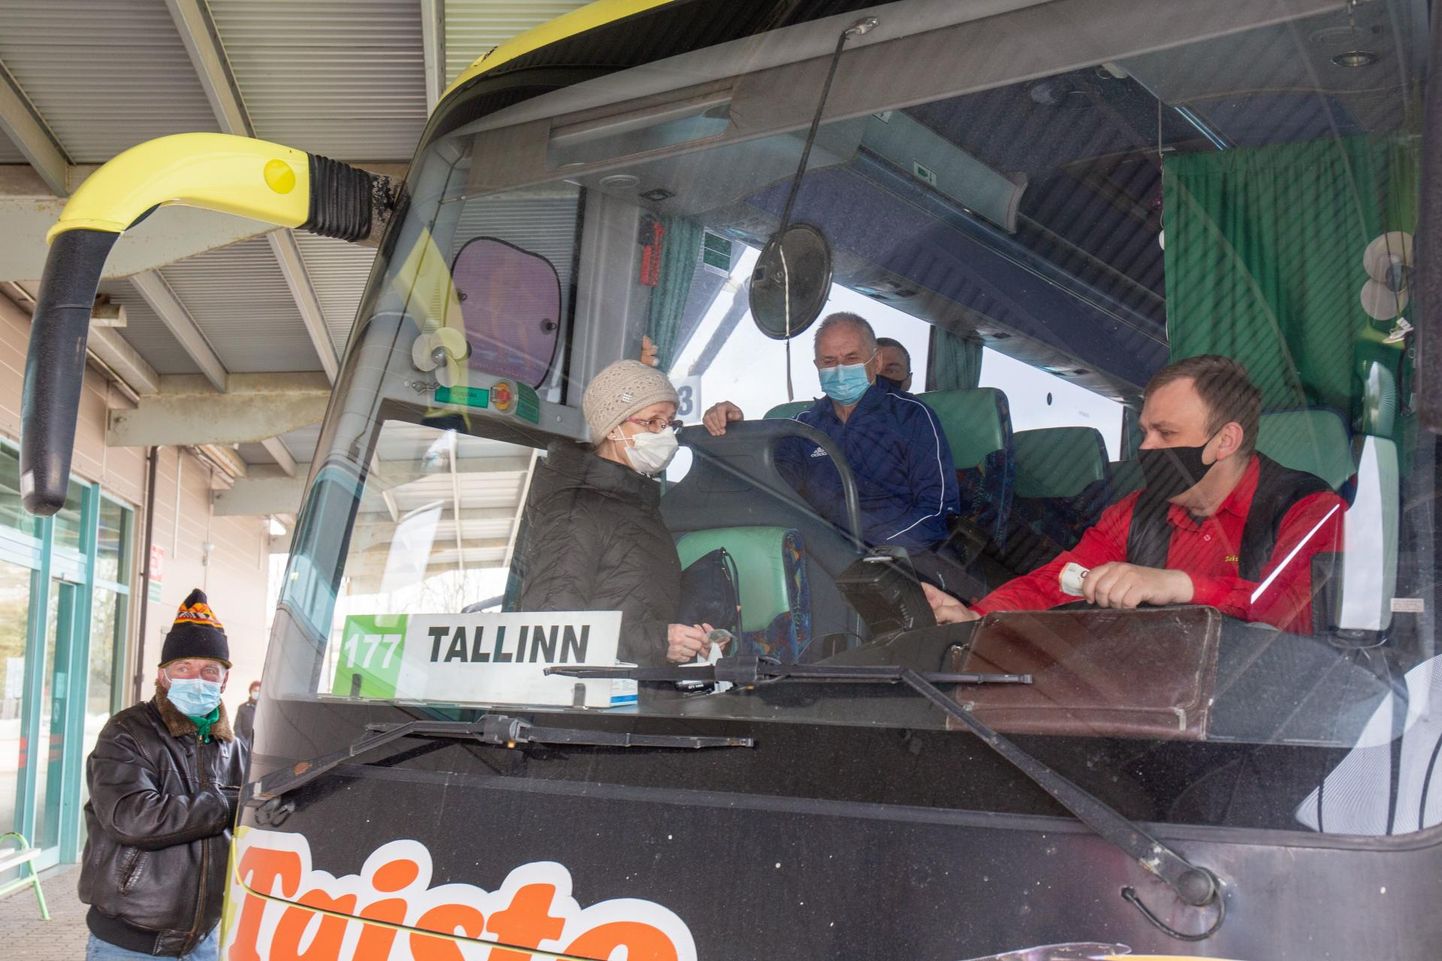 Taisto on üks kolmest ühistranspordifirmast, mille bussid endiselt Viljandi ja Tallinna vahel vuravad.